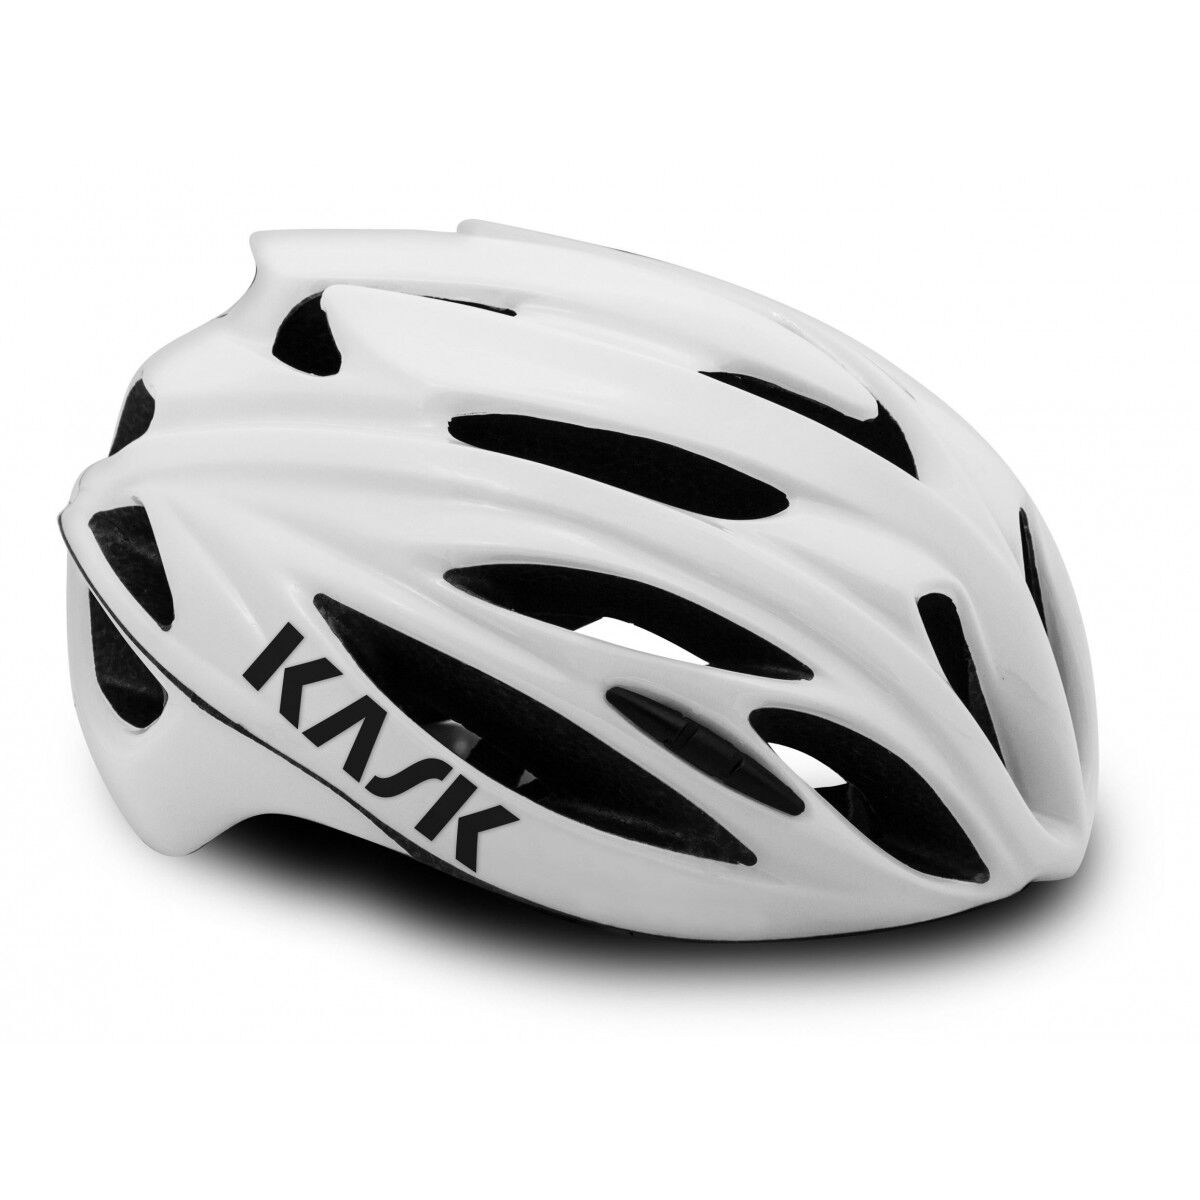 KASK Rapido 2021 - Casco bici da corsa